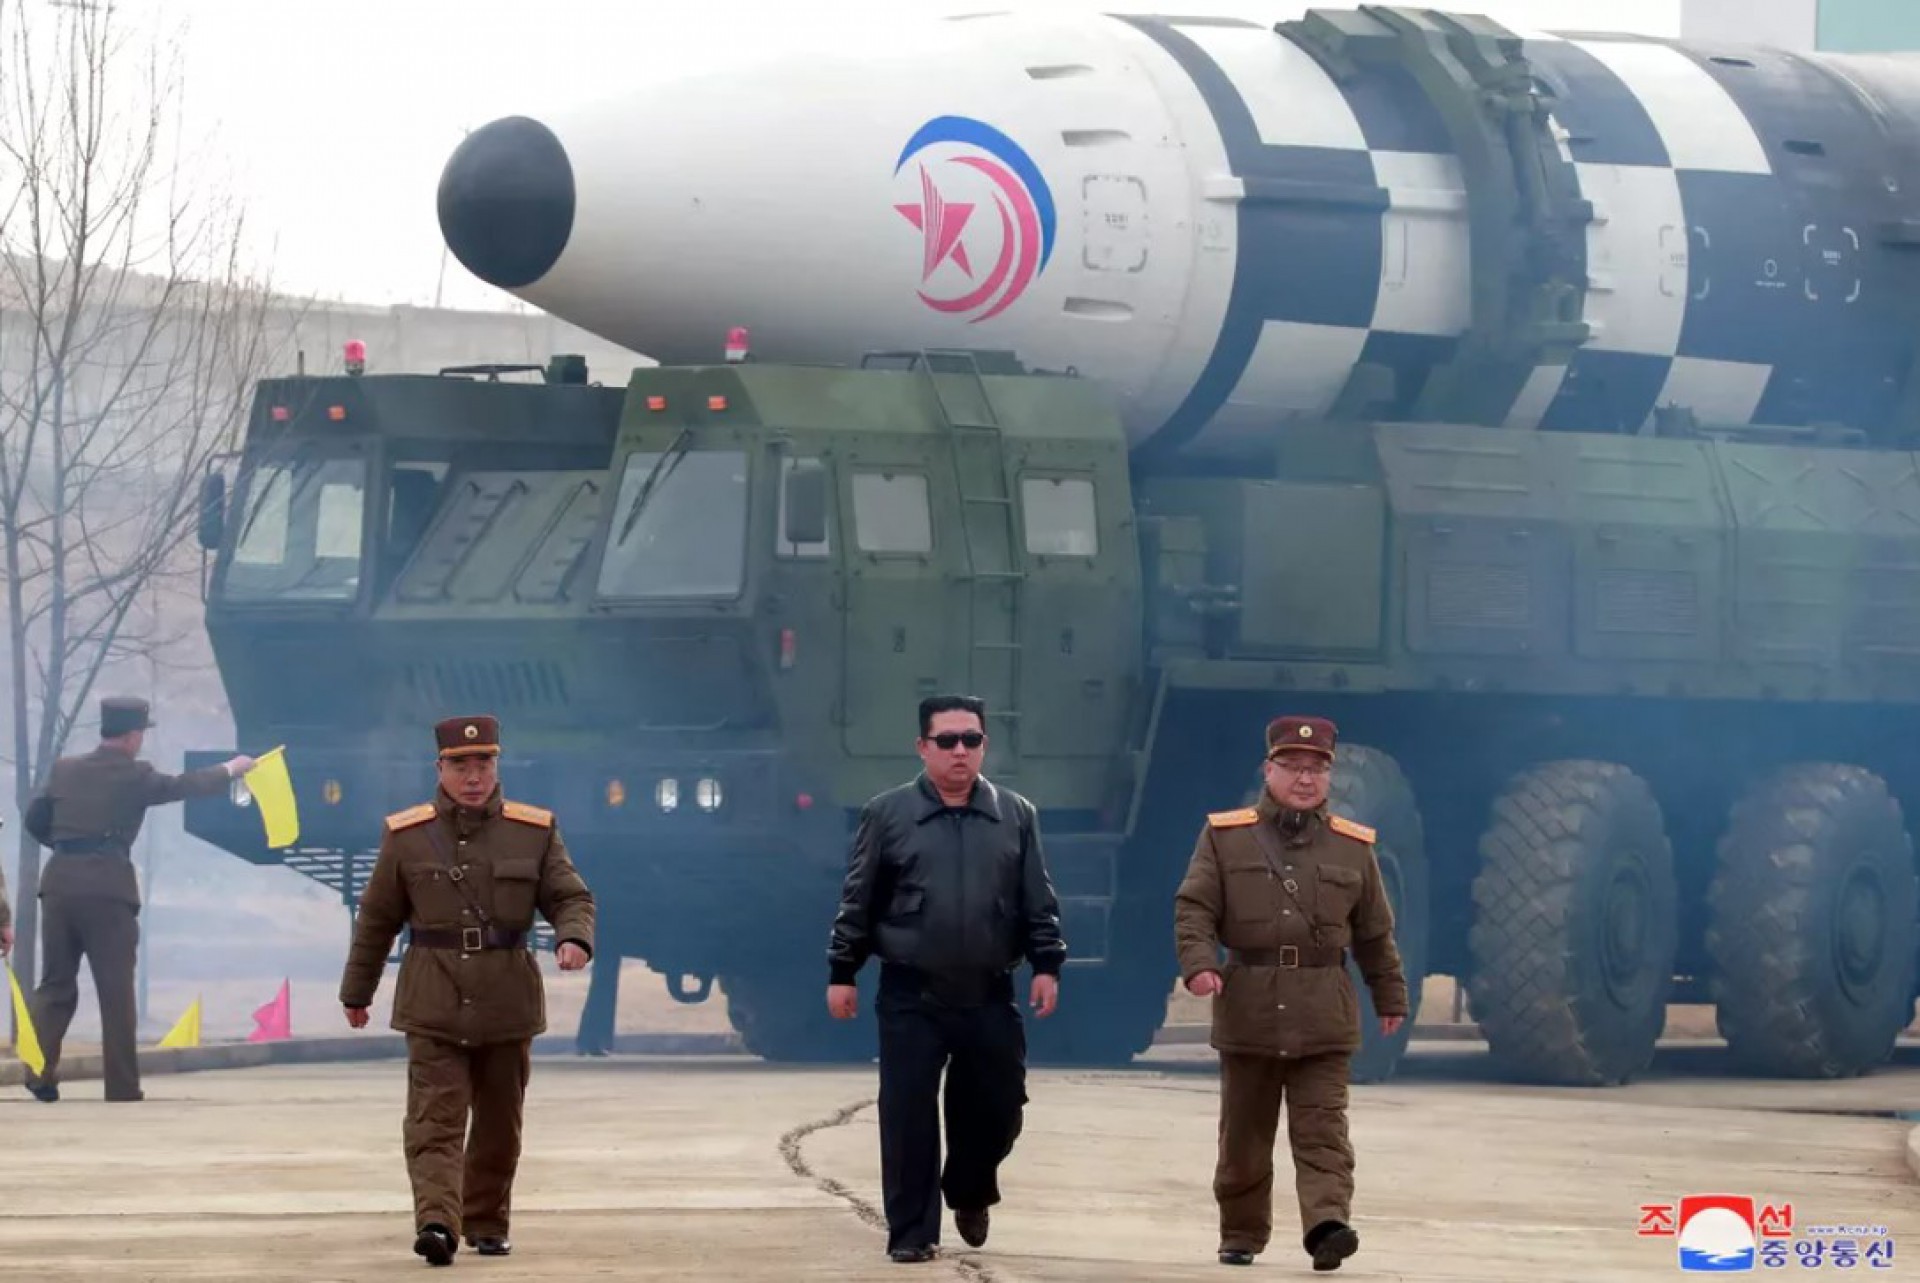 Produção hollywoodiana mostra lançamento de míssil na Coreia do Norte